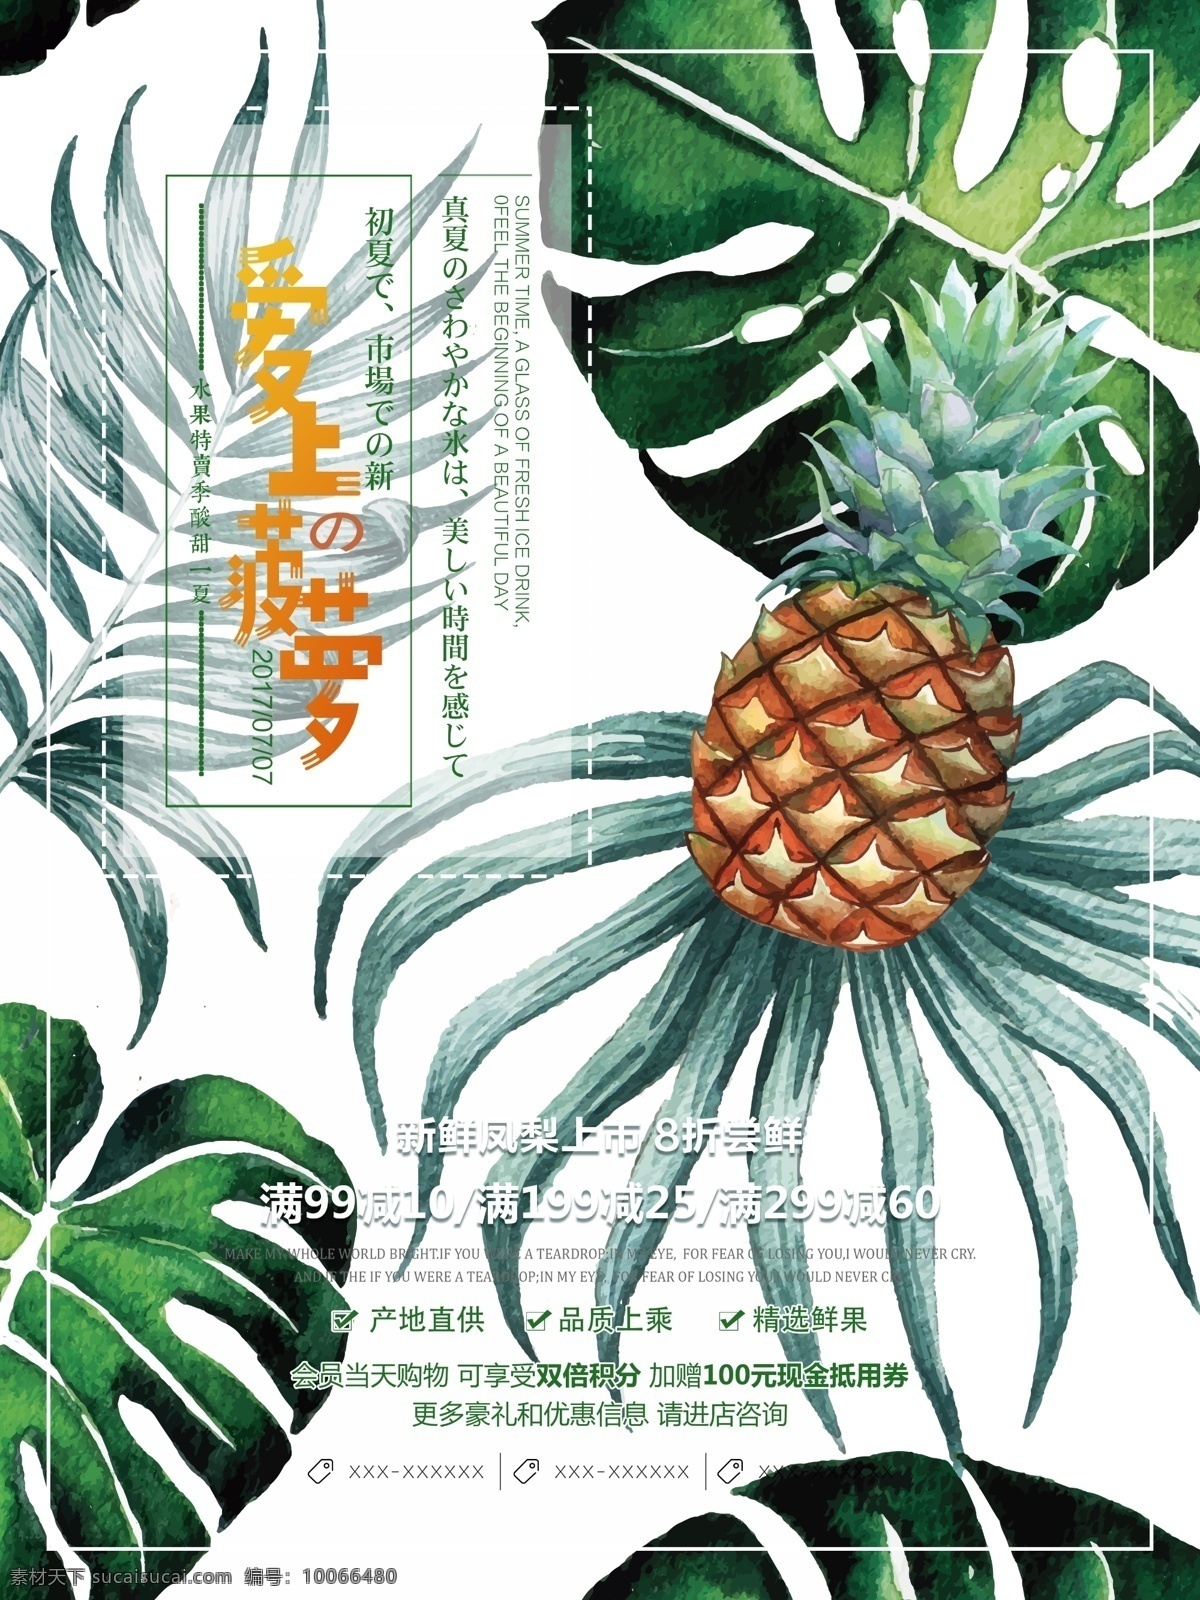 绿色 创意 水果 清新 手绘 爱上 菠萝 促销 海报 简约 台湾凤梨 凤梨 新鲜上市 水果上市 水果批发 超市 水果店 水果市场 水果季 打折 活动 宣传